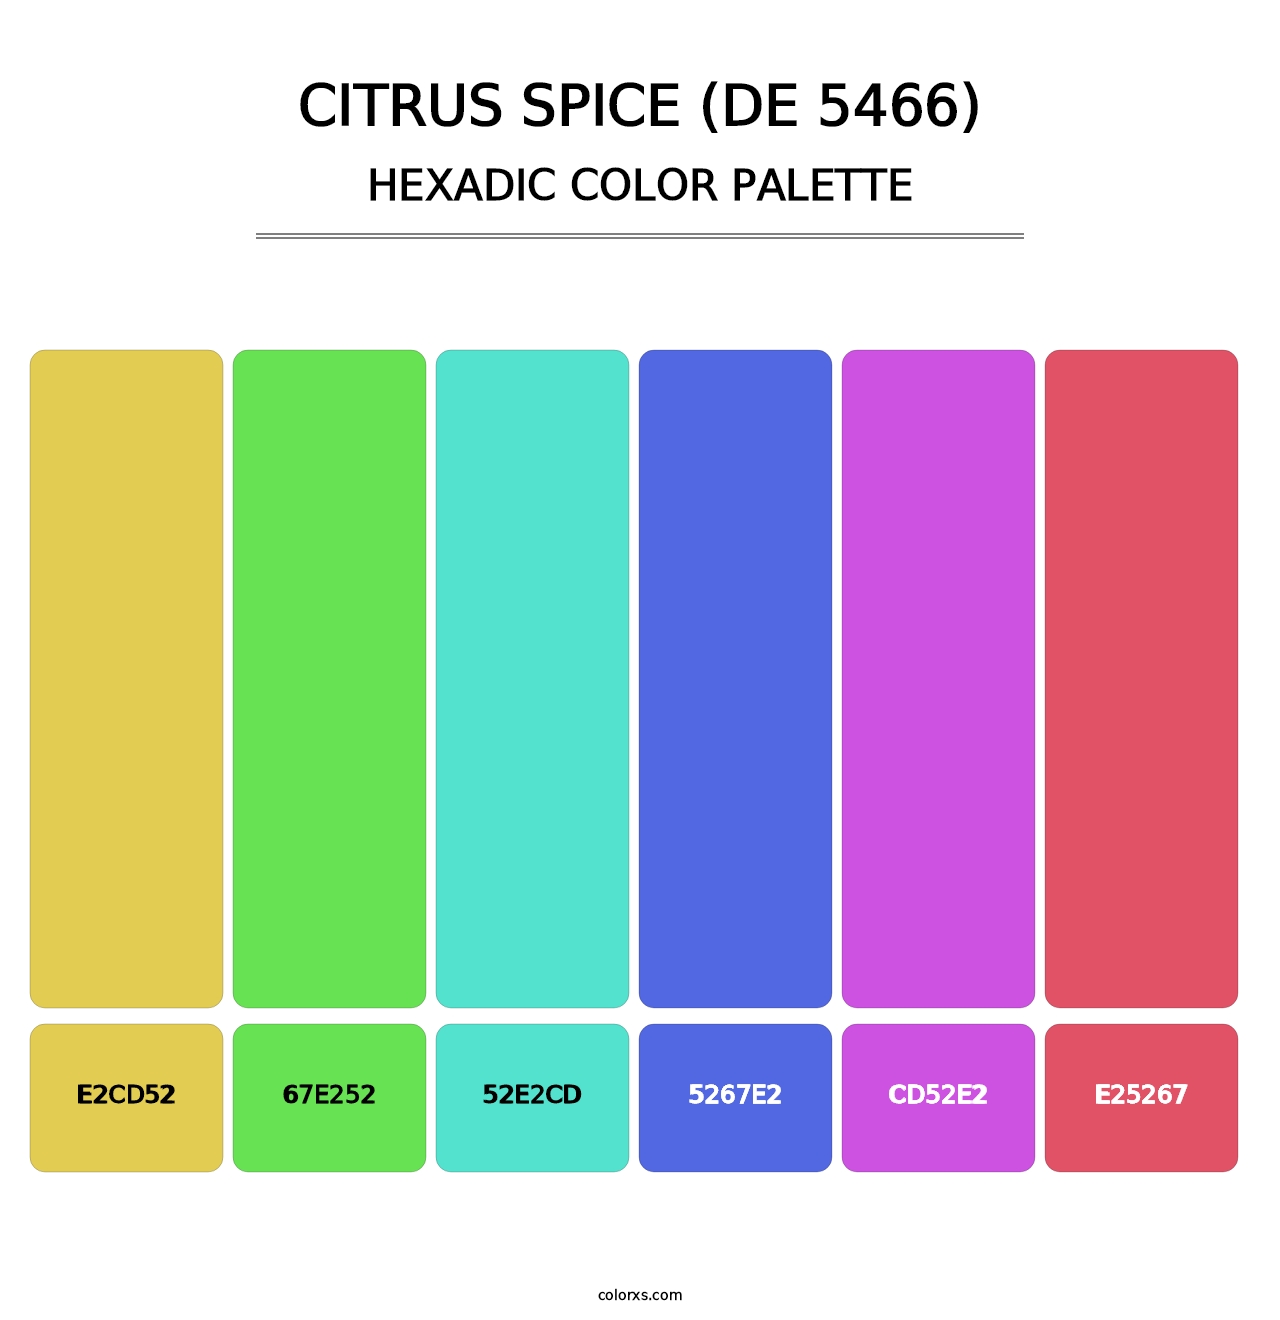 Citrus Spice (DE 5466) - Hexadic Color Palette